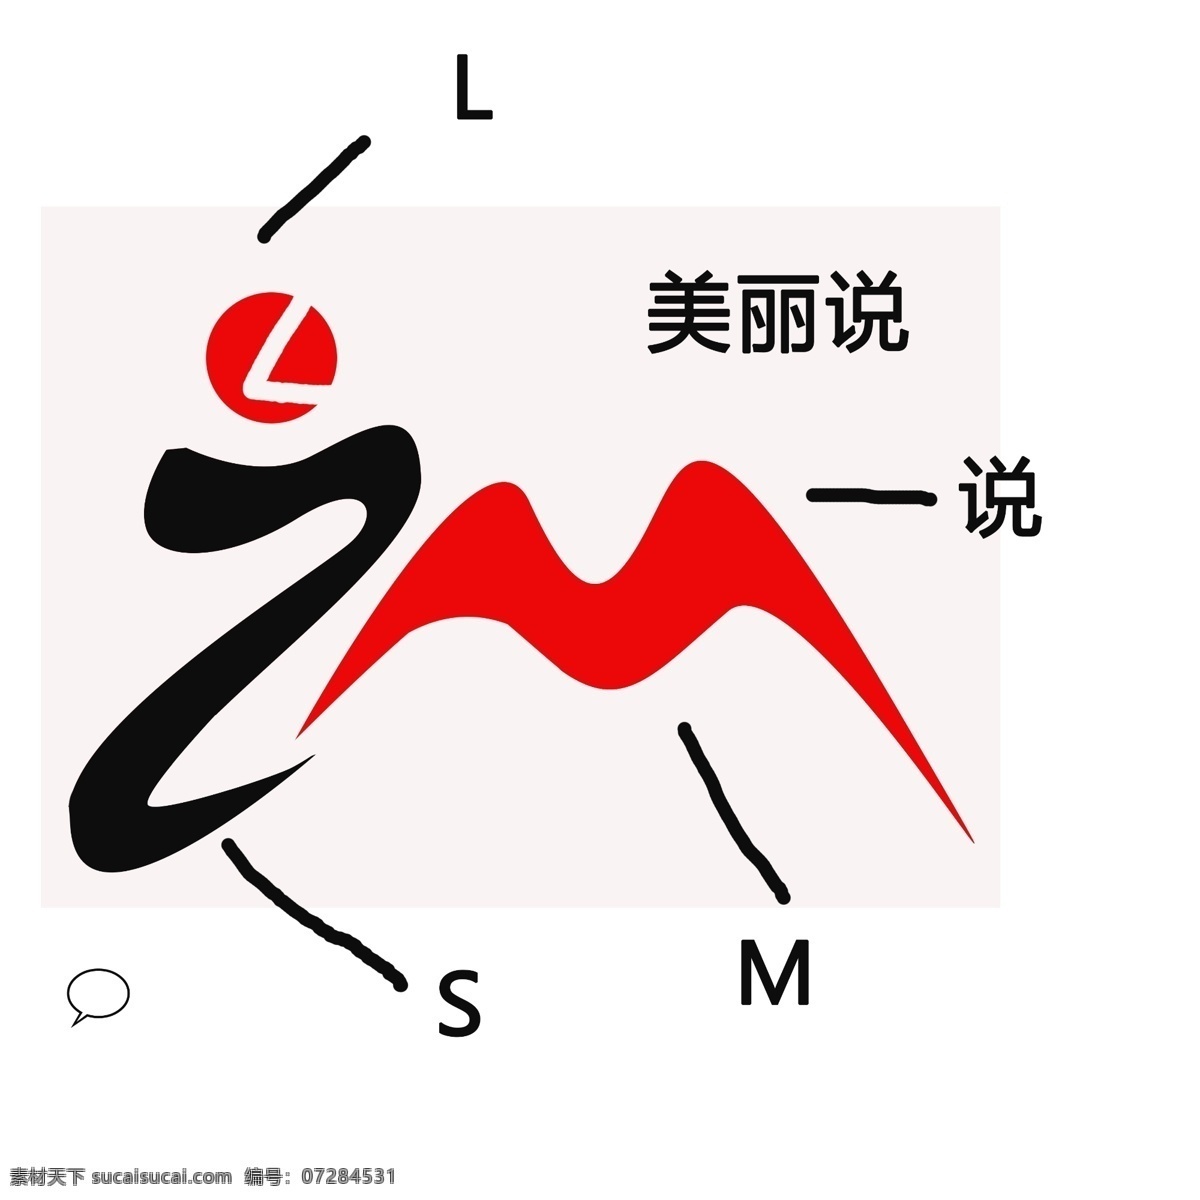 美丽 logo 美丽说 变幻logo 参考logo 简单logo 标志图标 企业 标志